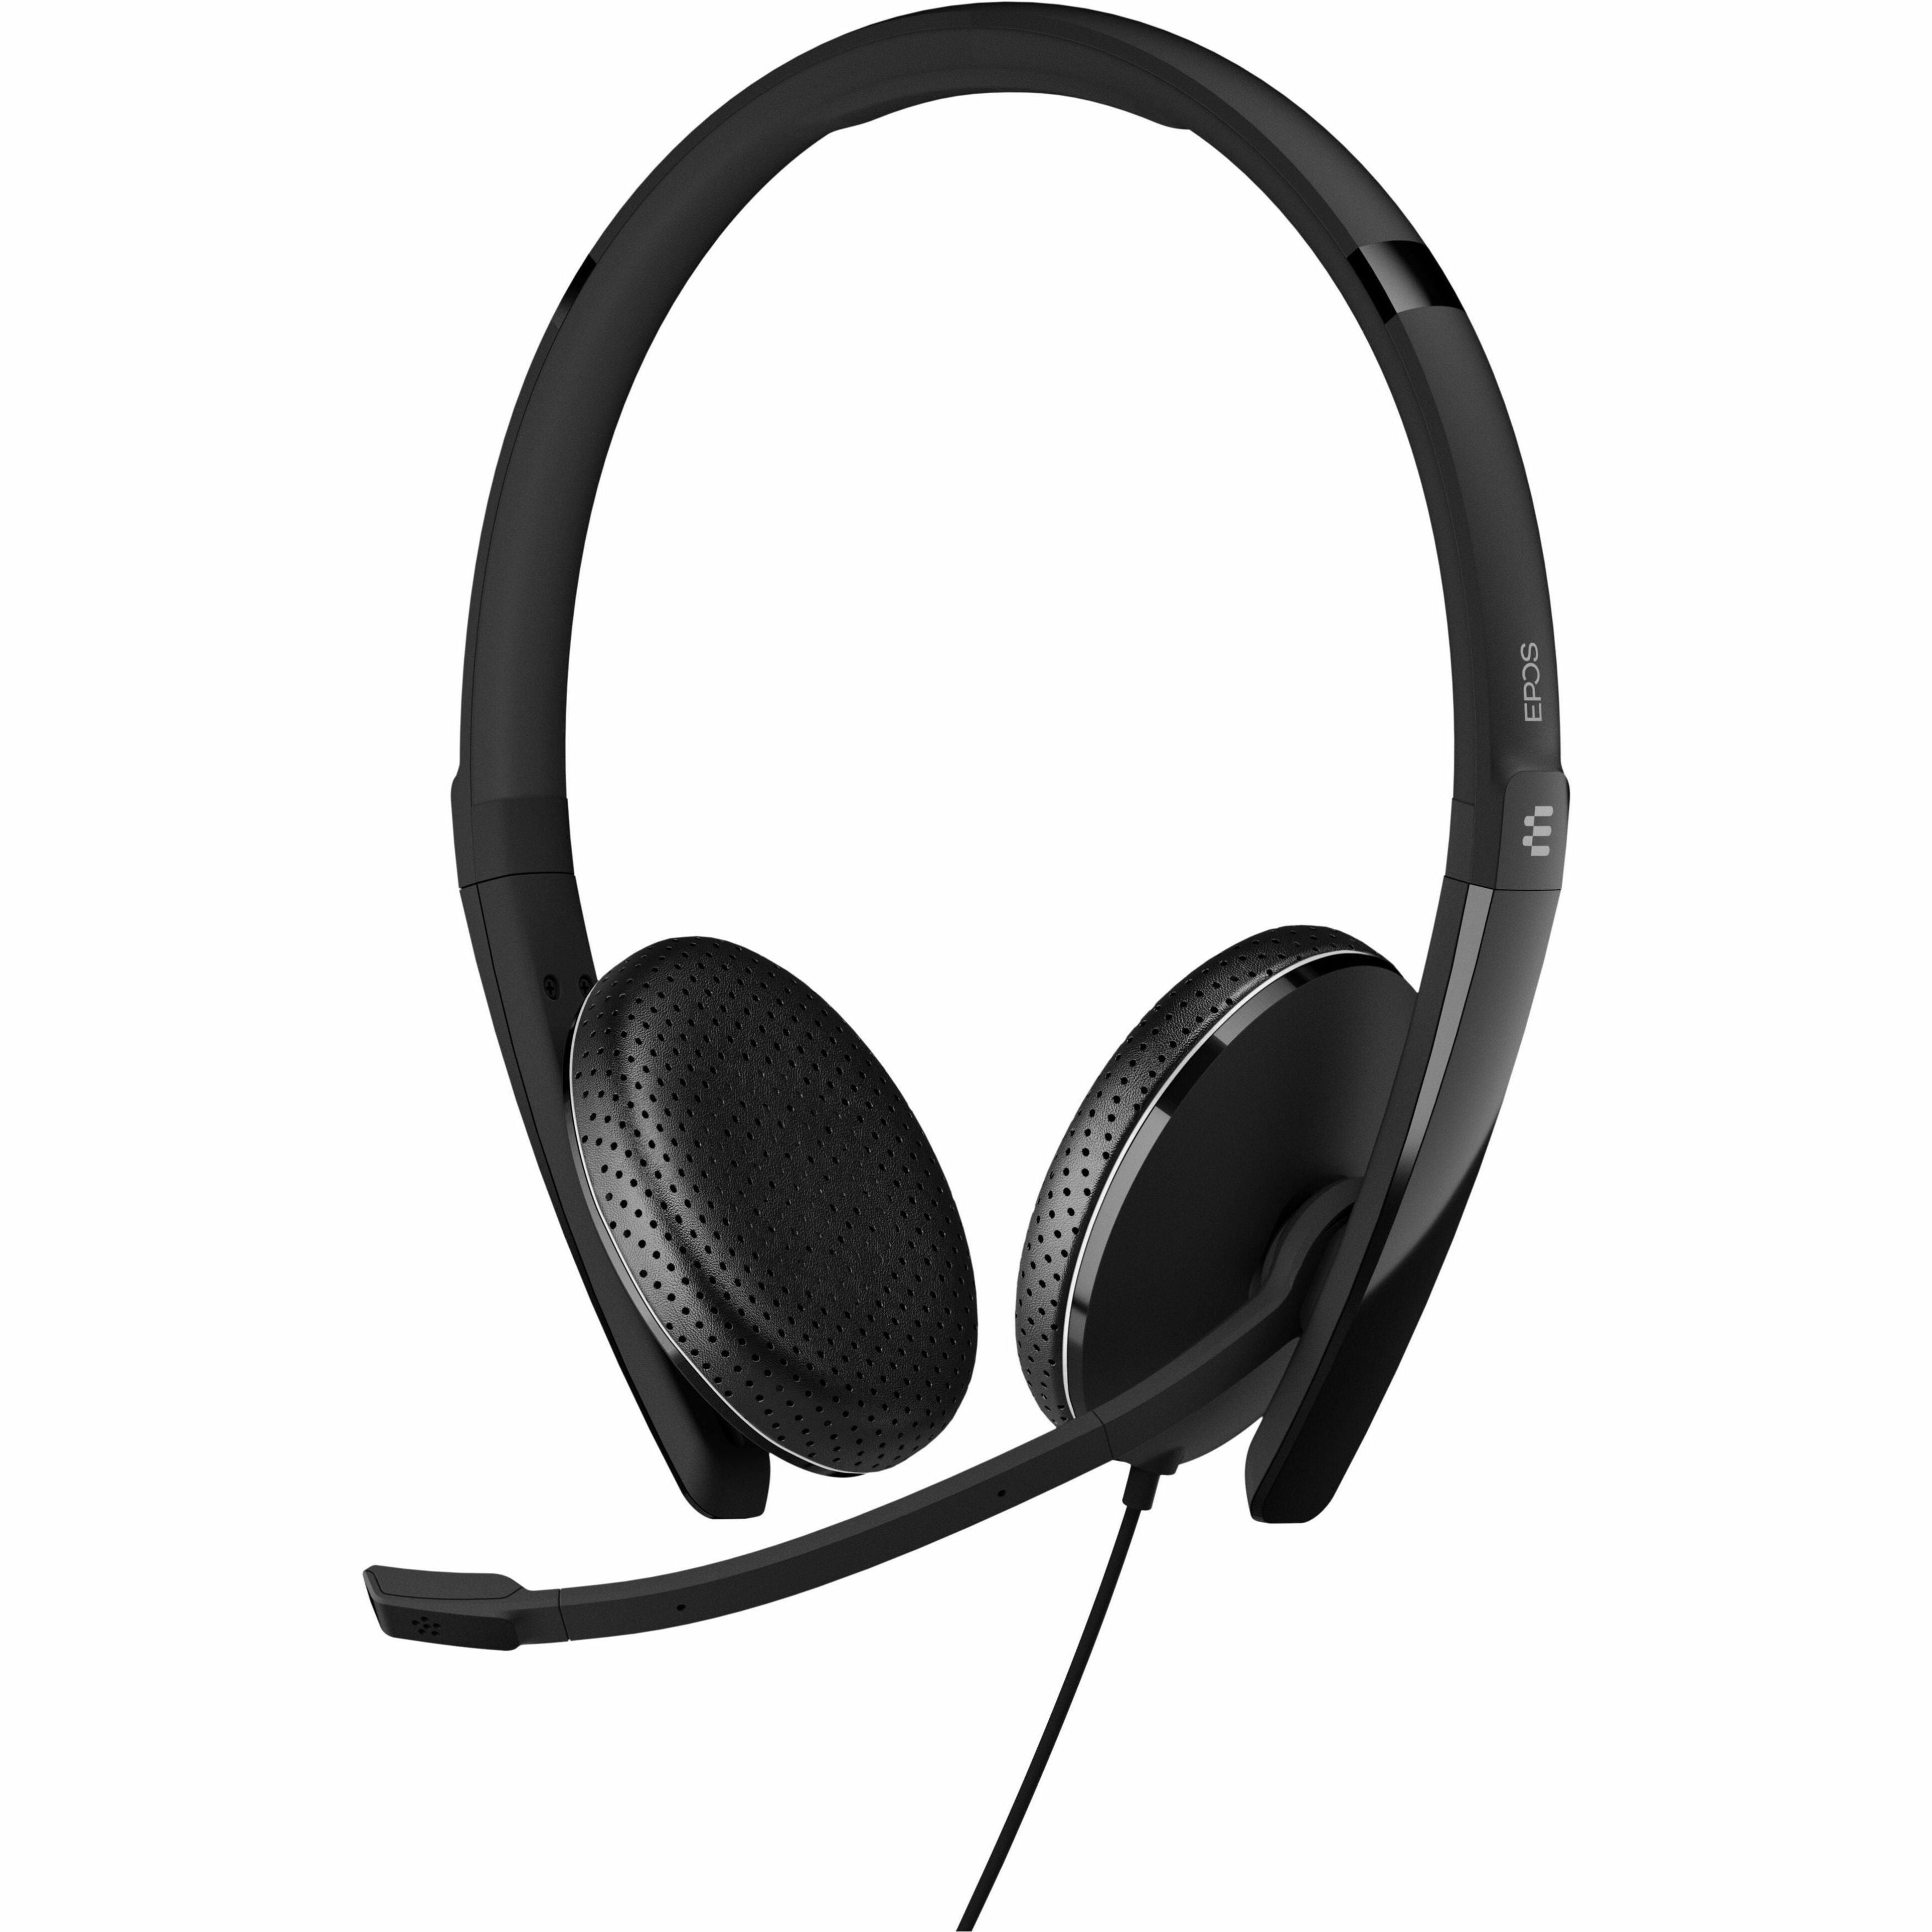 EPOS | SENNHEISER ADAPT 165 USB II On-ear Headset [Discontinued]